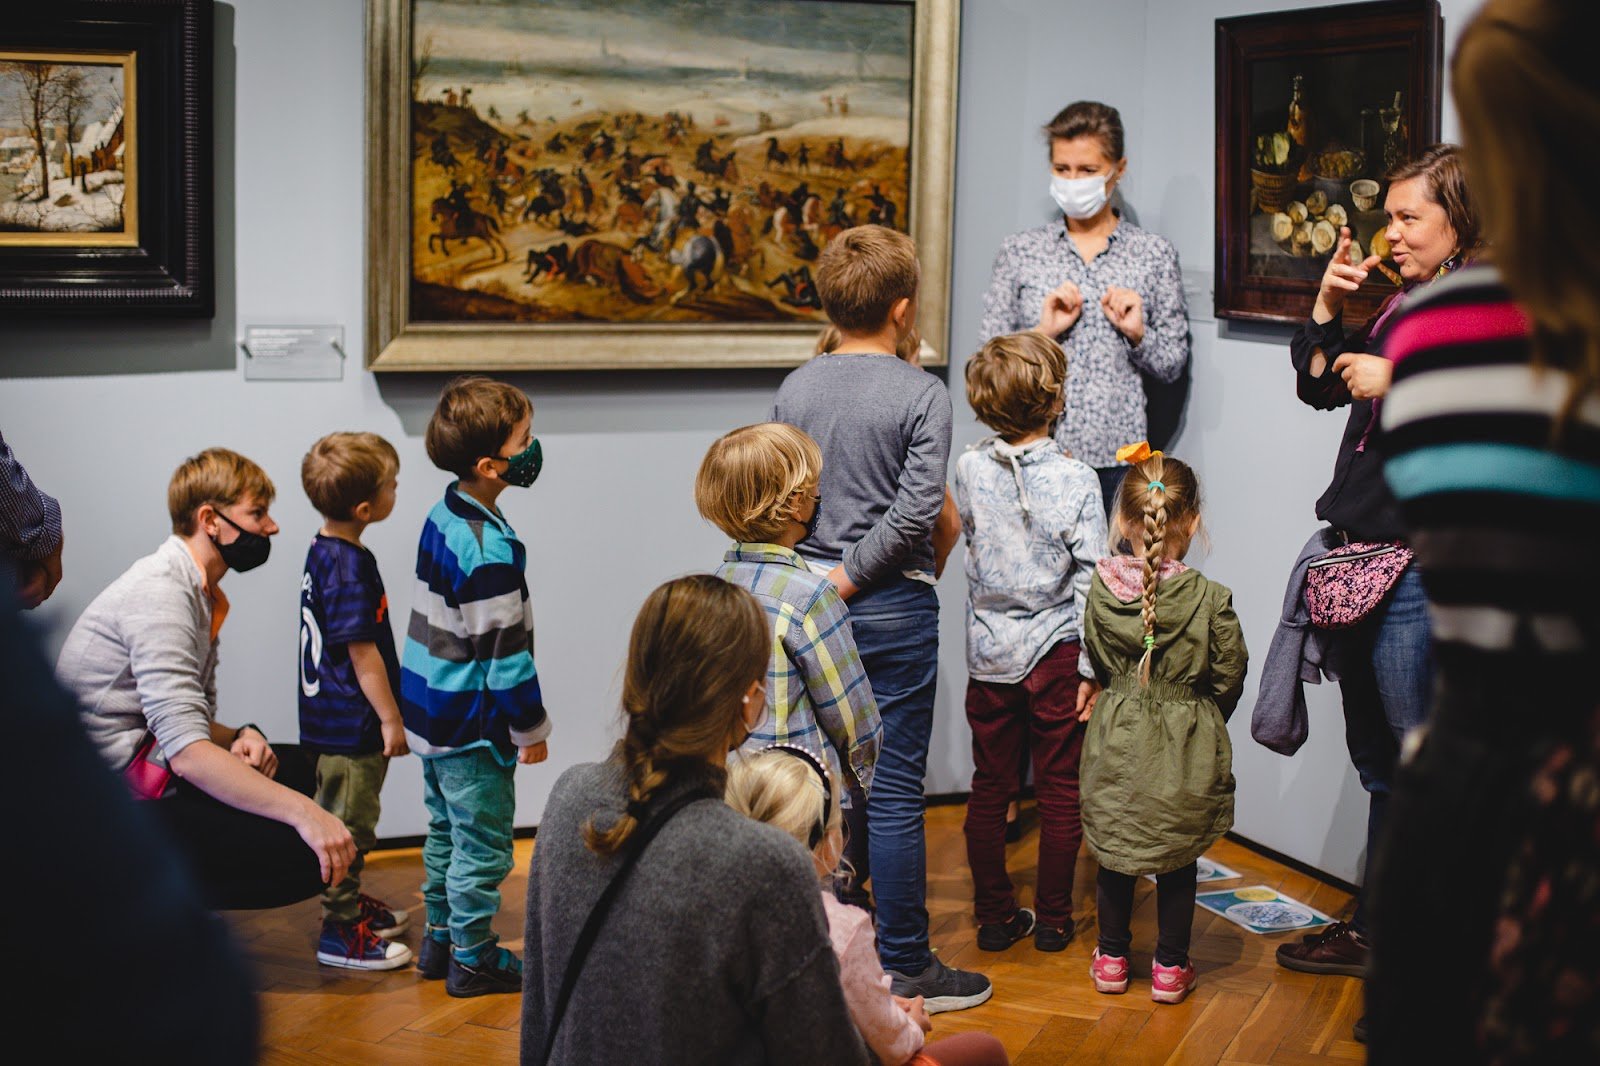 Grupa dzieci stoi grupą w muzeum, oglądają obrazy i słuchają co opowiada im przewodniczka, stojąca obok.